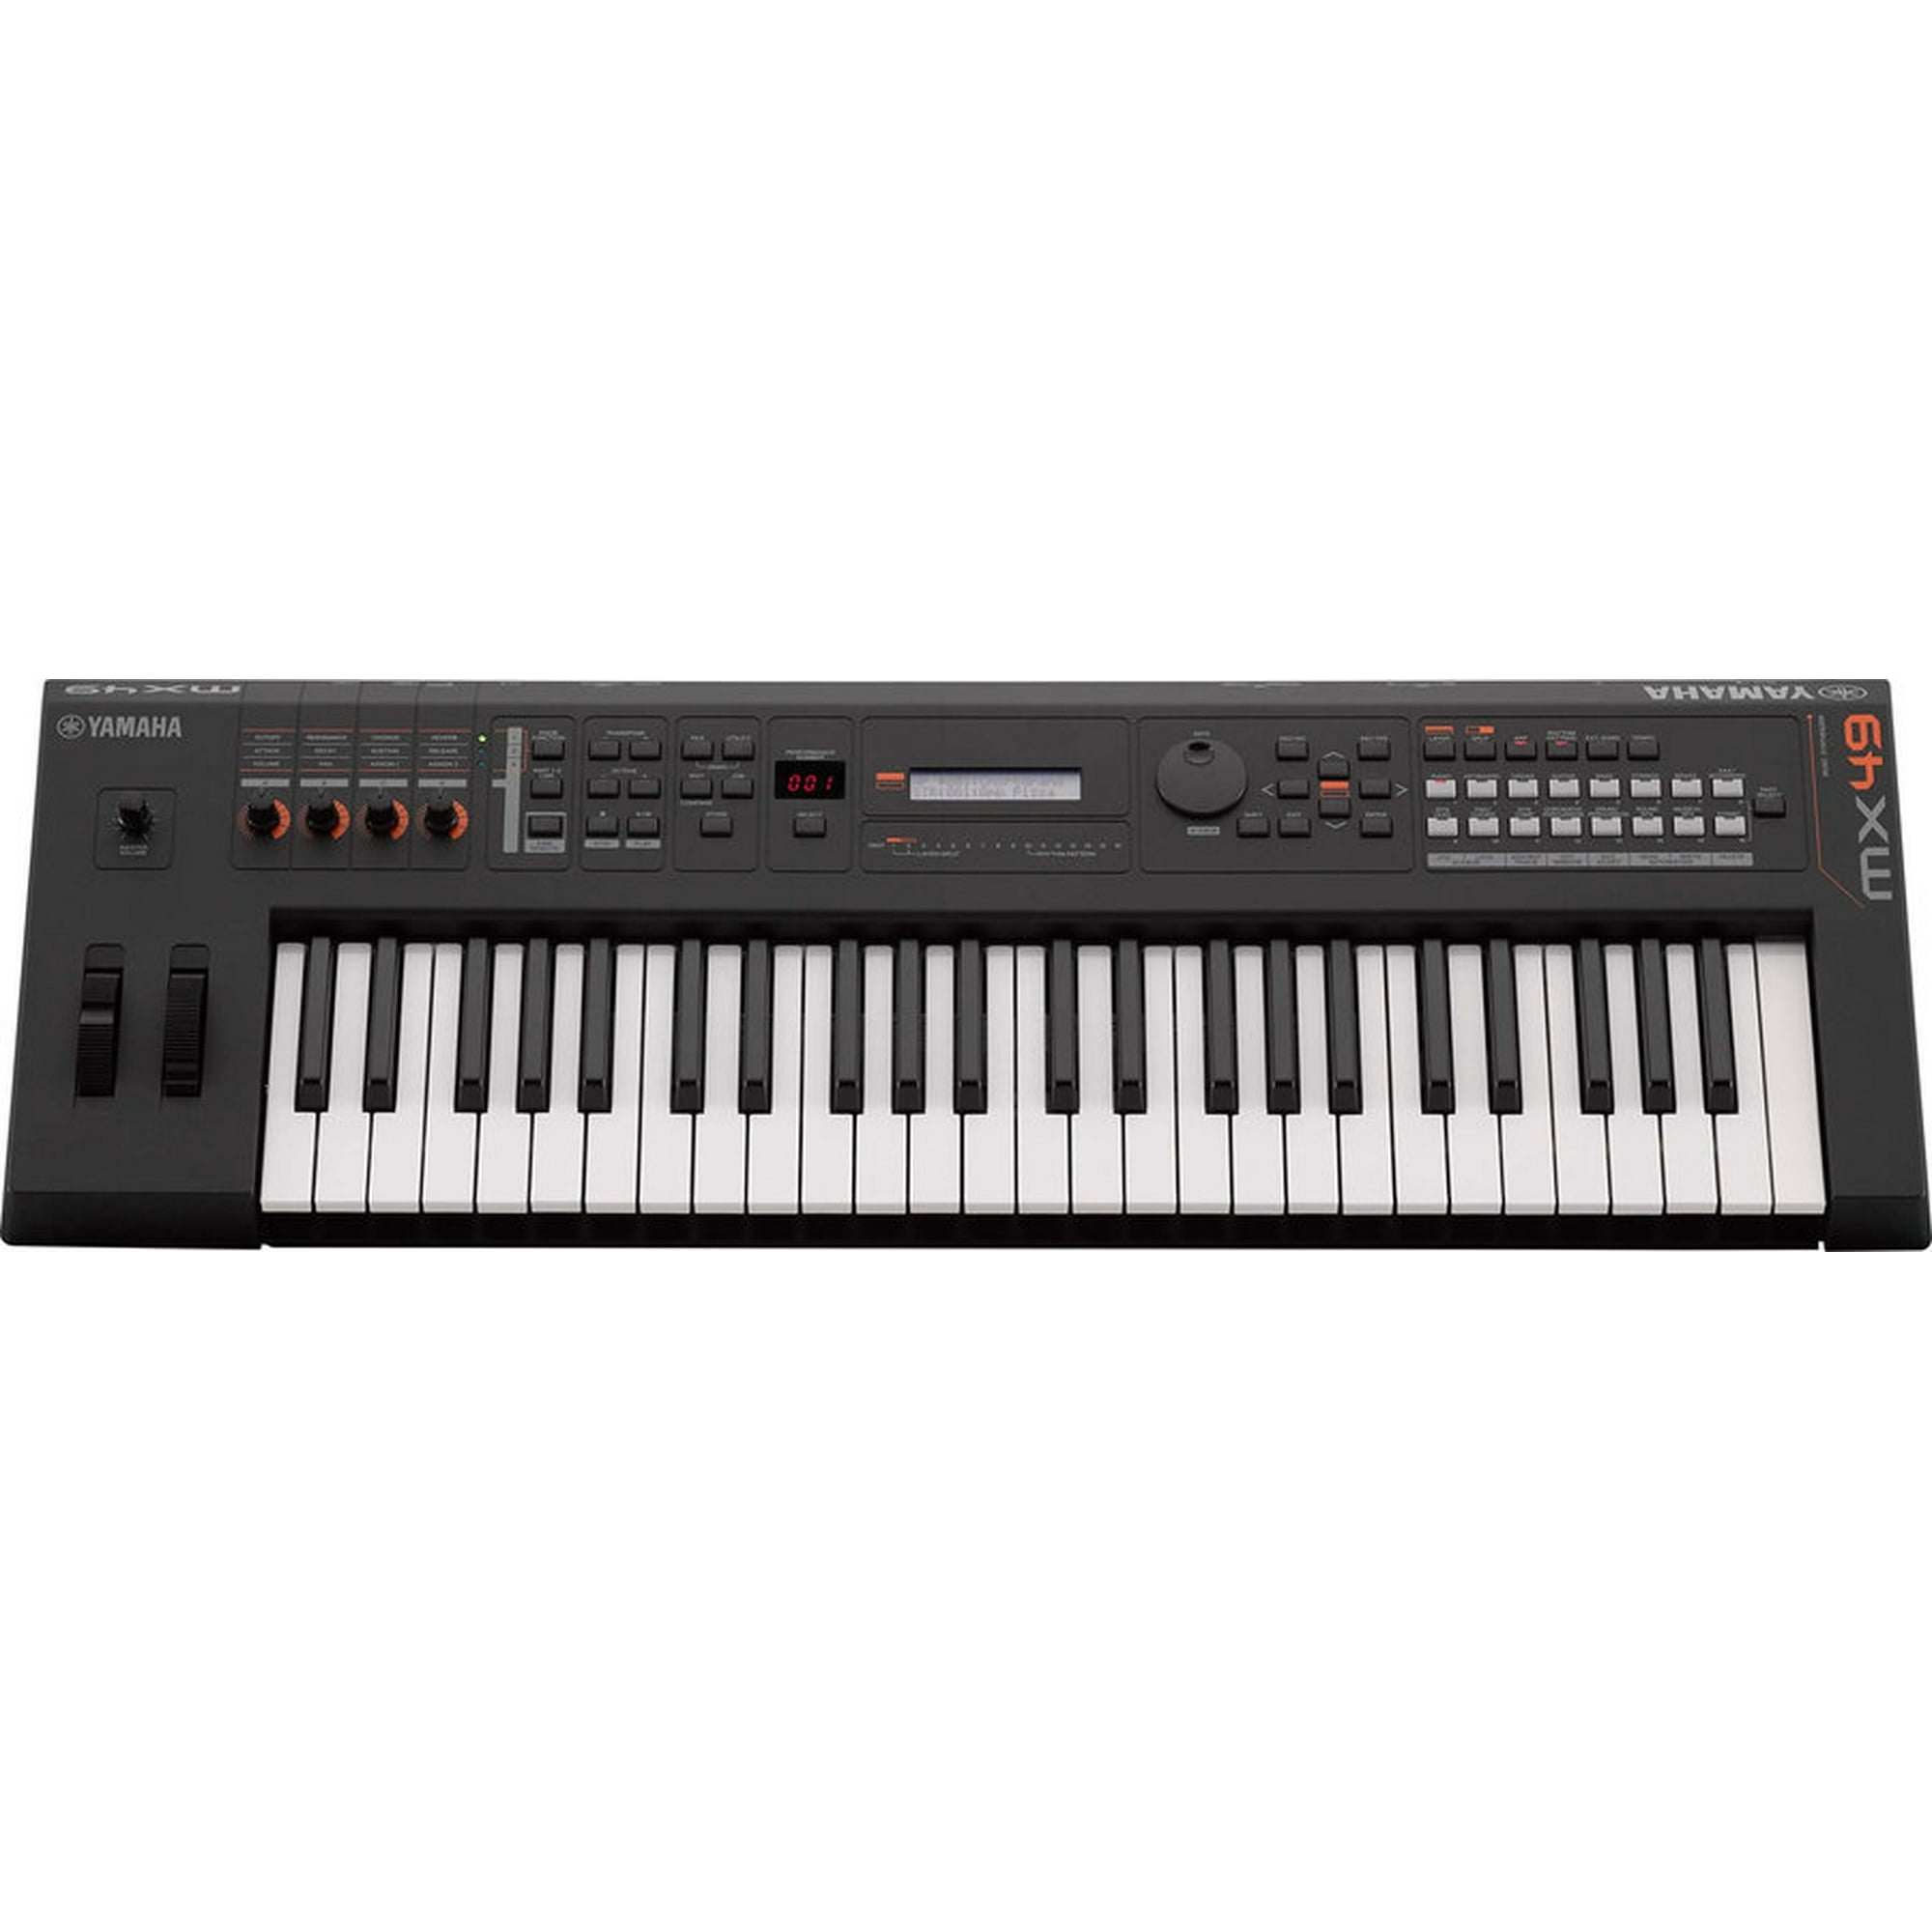 Yamaha MX49 BK Keyboard Synthesizer - Black | Walmart Canada